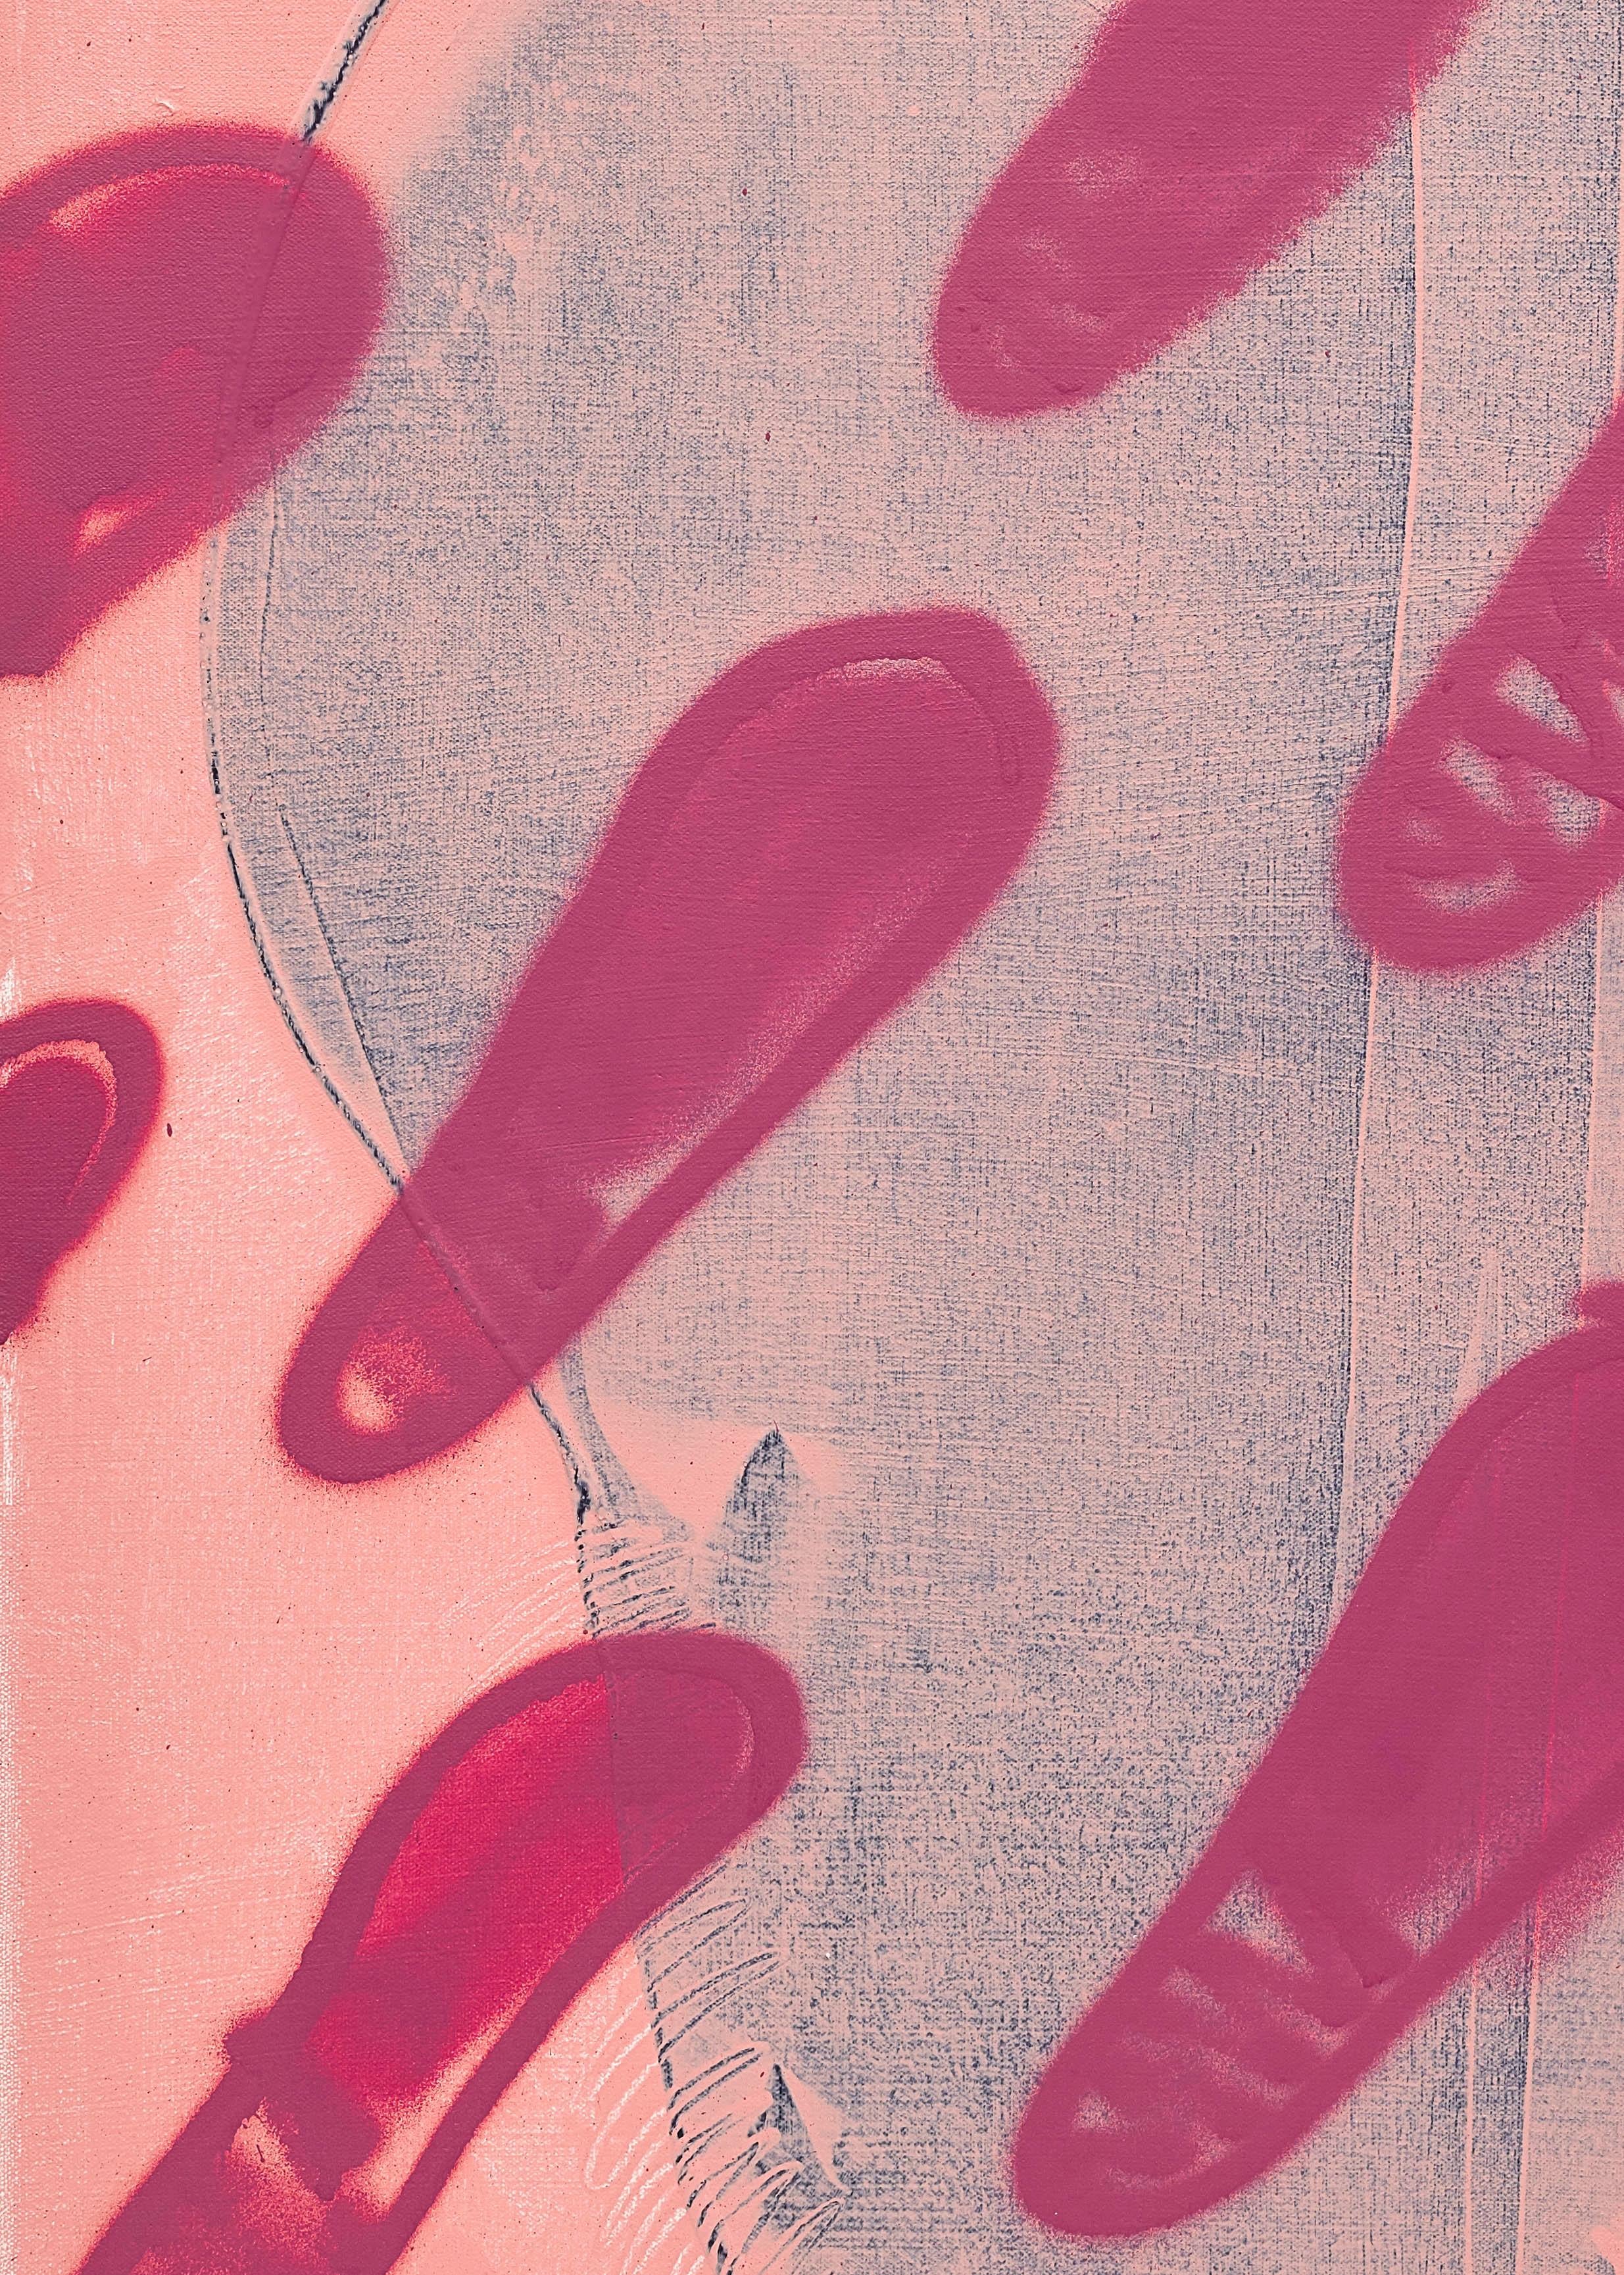 „Pink Tax“, zeitgenössische rosa gemusterte abstrakte Acryl- und Sprühfarbe auf Leinwand – Painting von Mel Reese